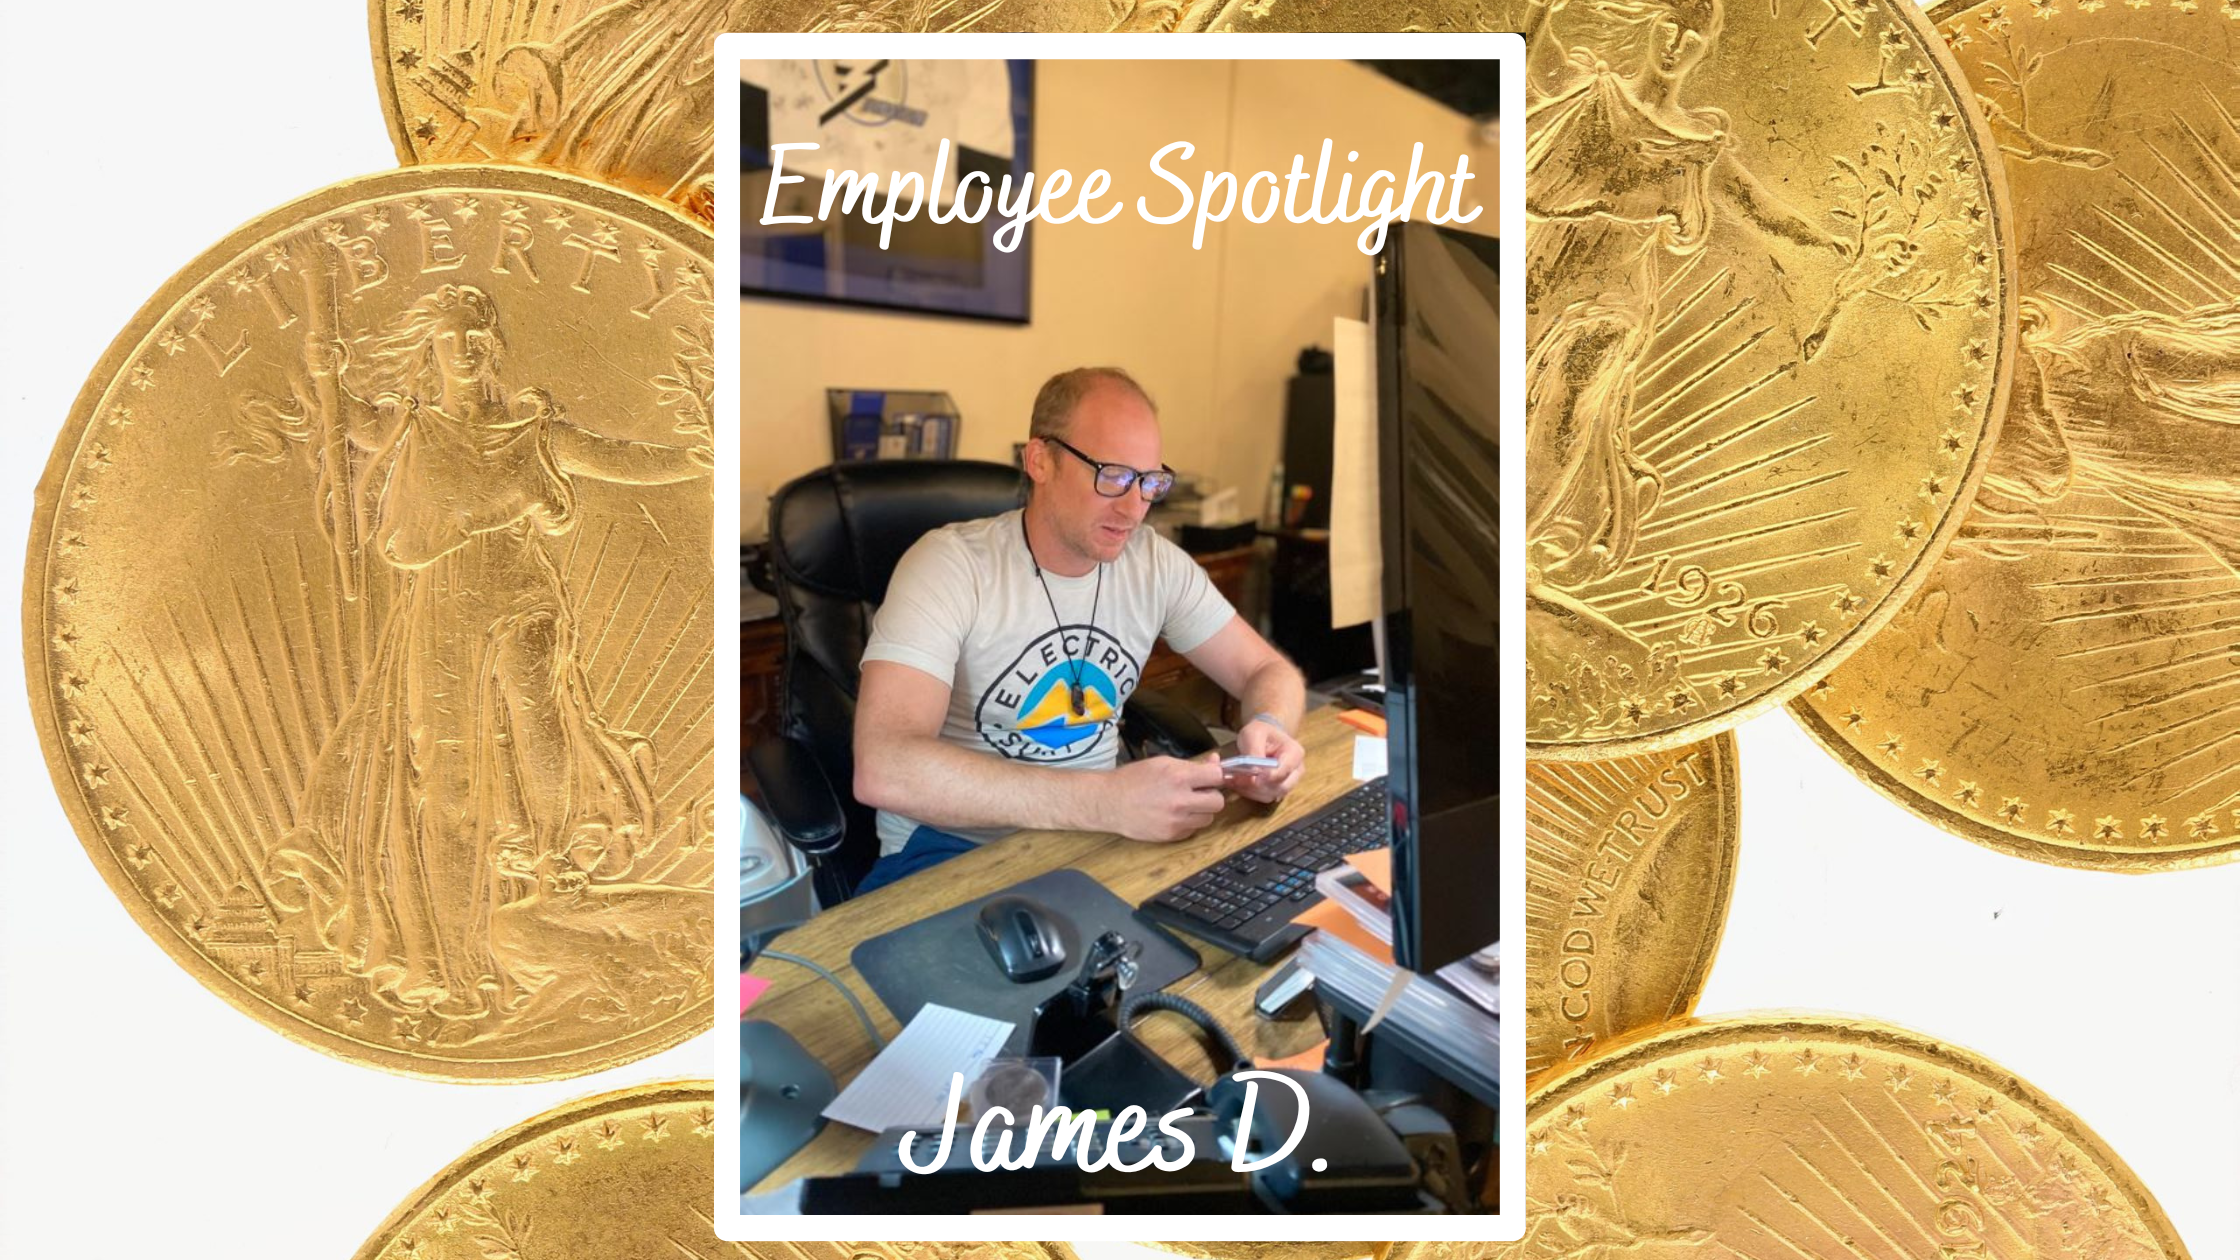 Employee Spotlight Blog: James D.